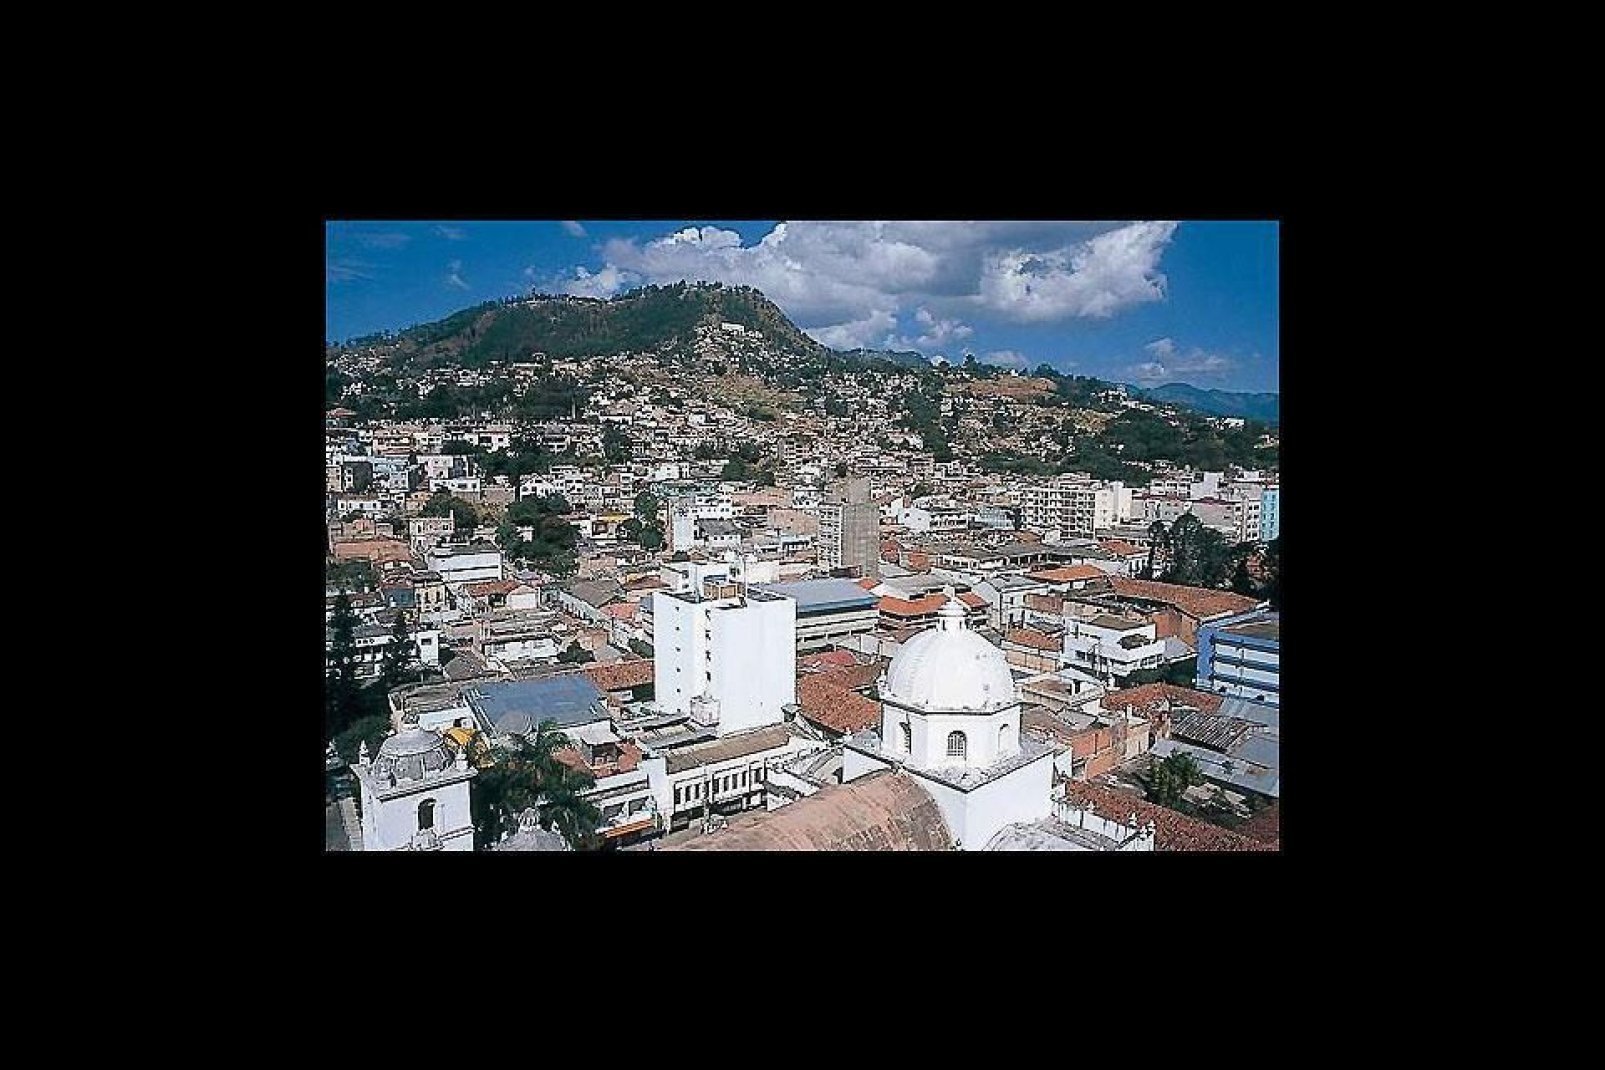 Tegucigalpa est la capitale d'Honduras. Elle possède un petit centre historique, mais reste une ville assez pauvre.